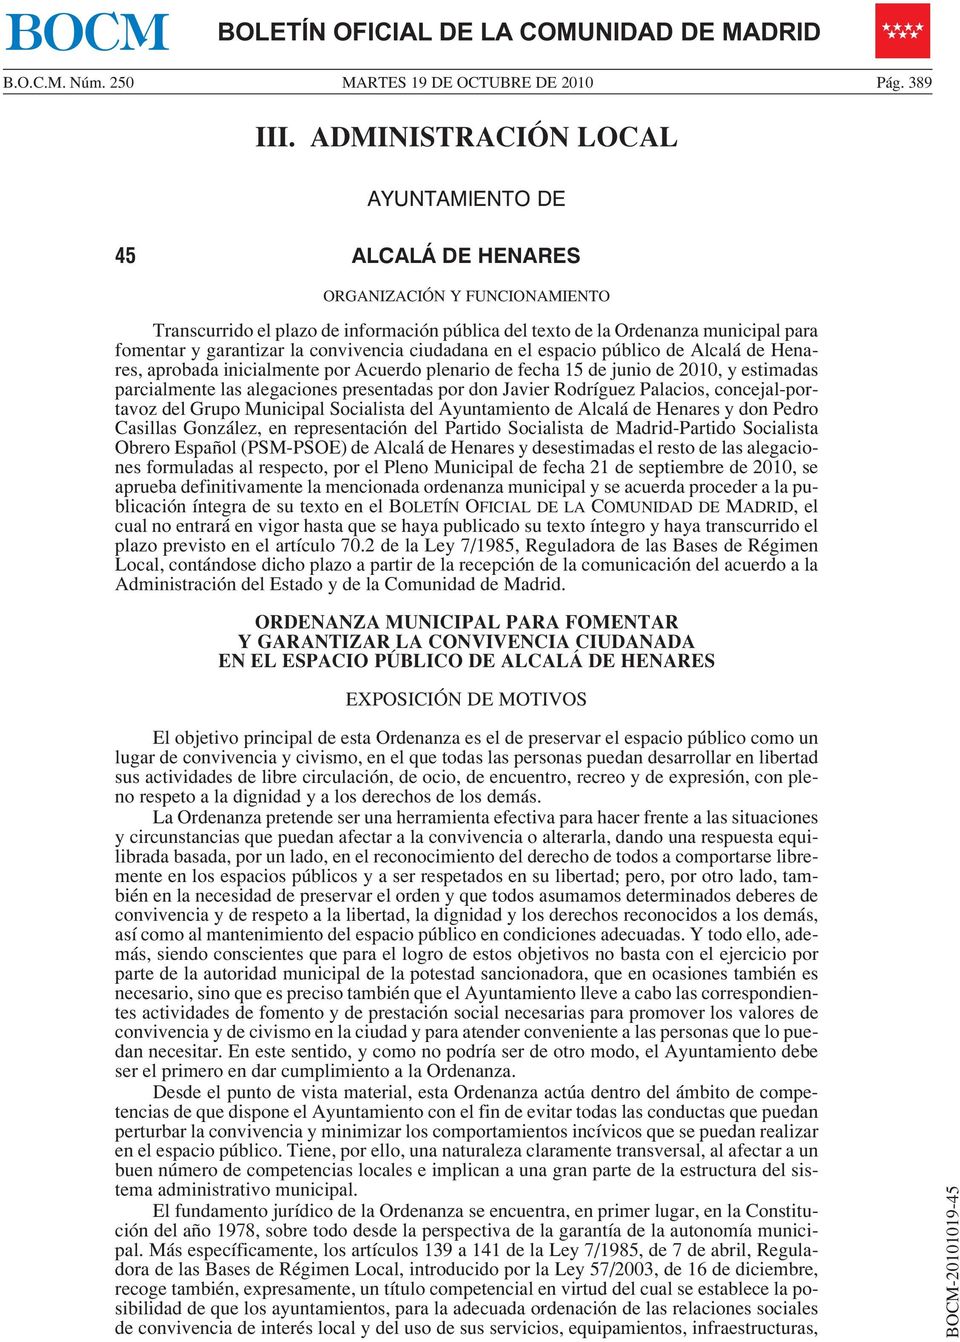 convivencia ciudadana en el espacio público de Alcalá de Henares, aprobada inicialmente por Acuerdo plenario de fecha 15 de junio de 2010, y estimadas parcialmente las alegaciones presentadas por don